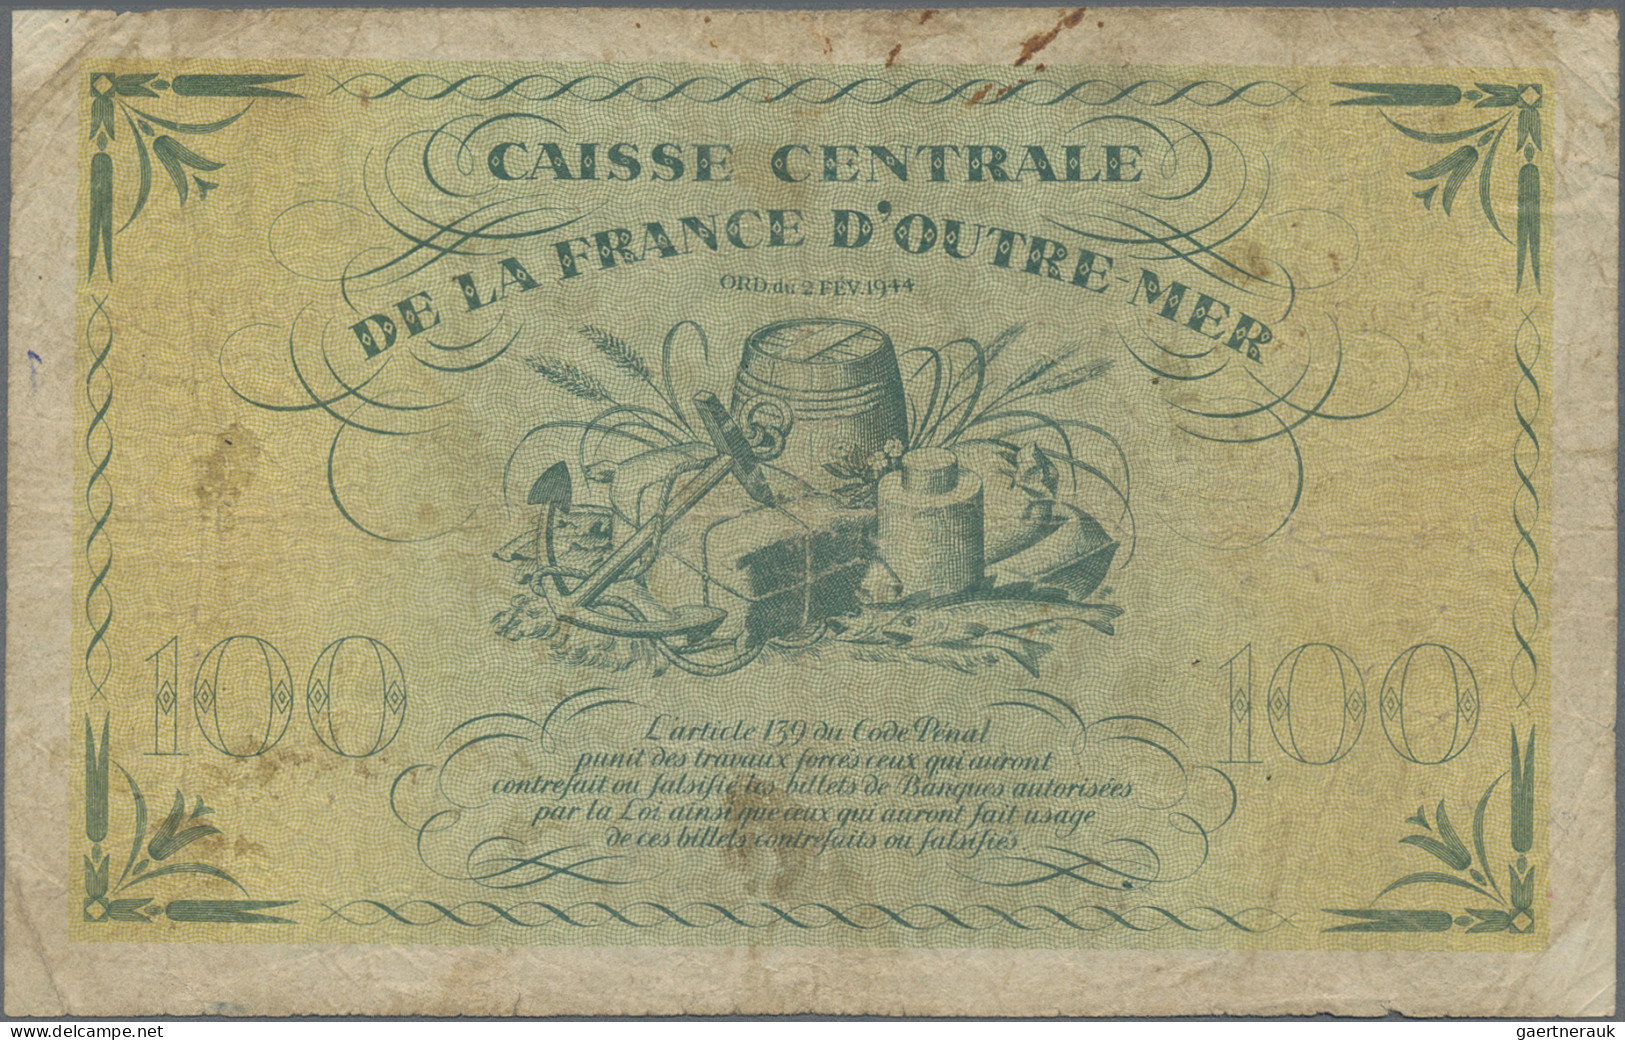 French Guiana: Banque De La Guyane And Caisse Centrale De La France D'Outre-Mer - French Guiana